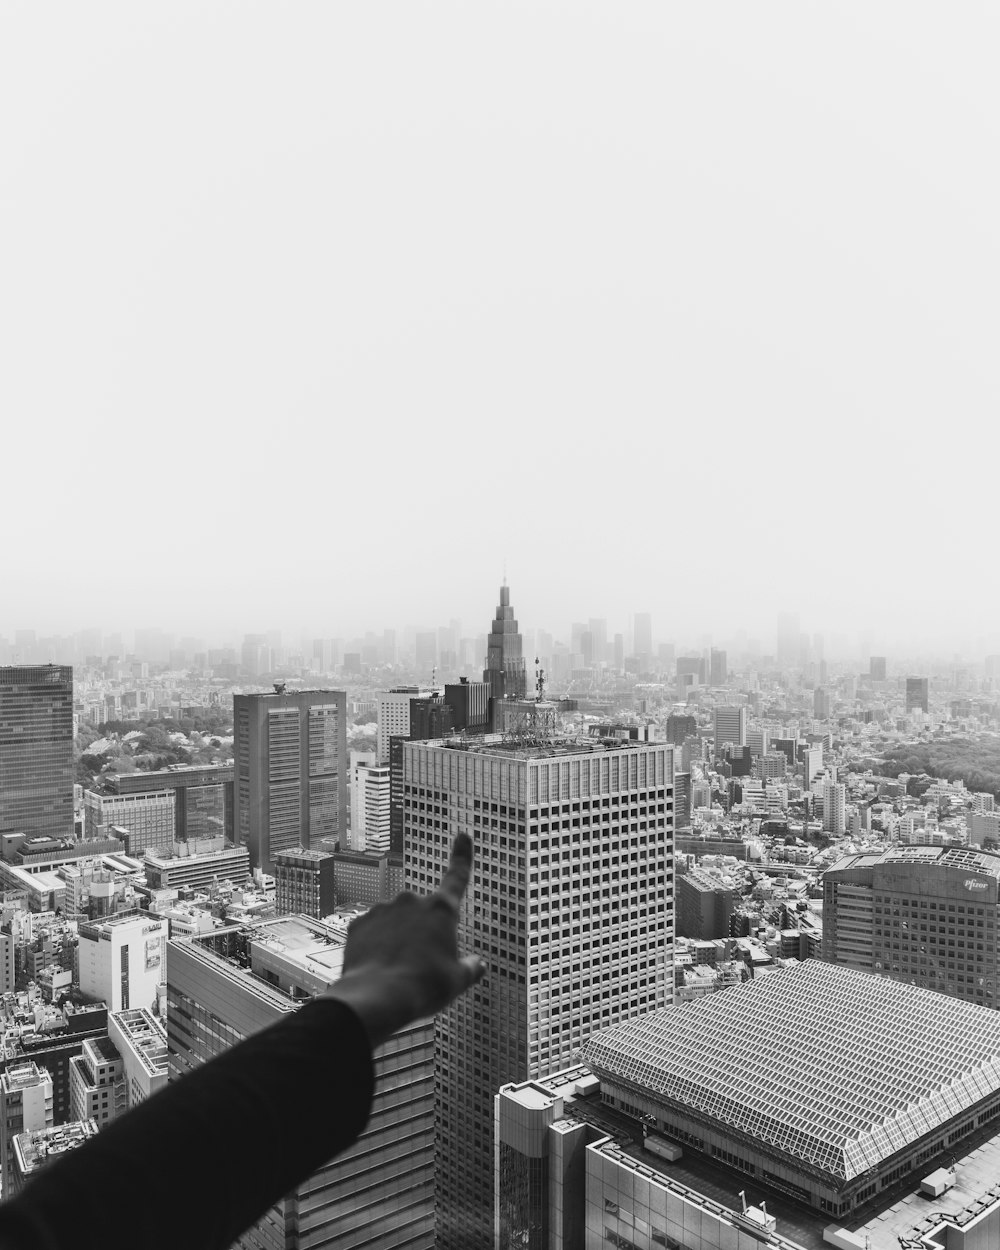 クライスラータワー、ニューヨークを指差す人のグレースケール写真